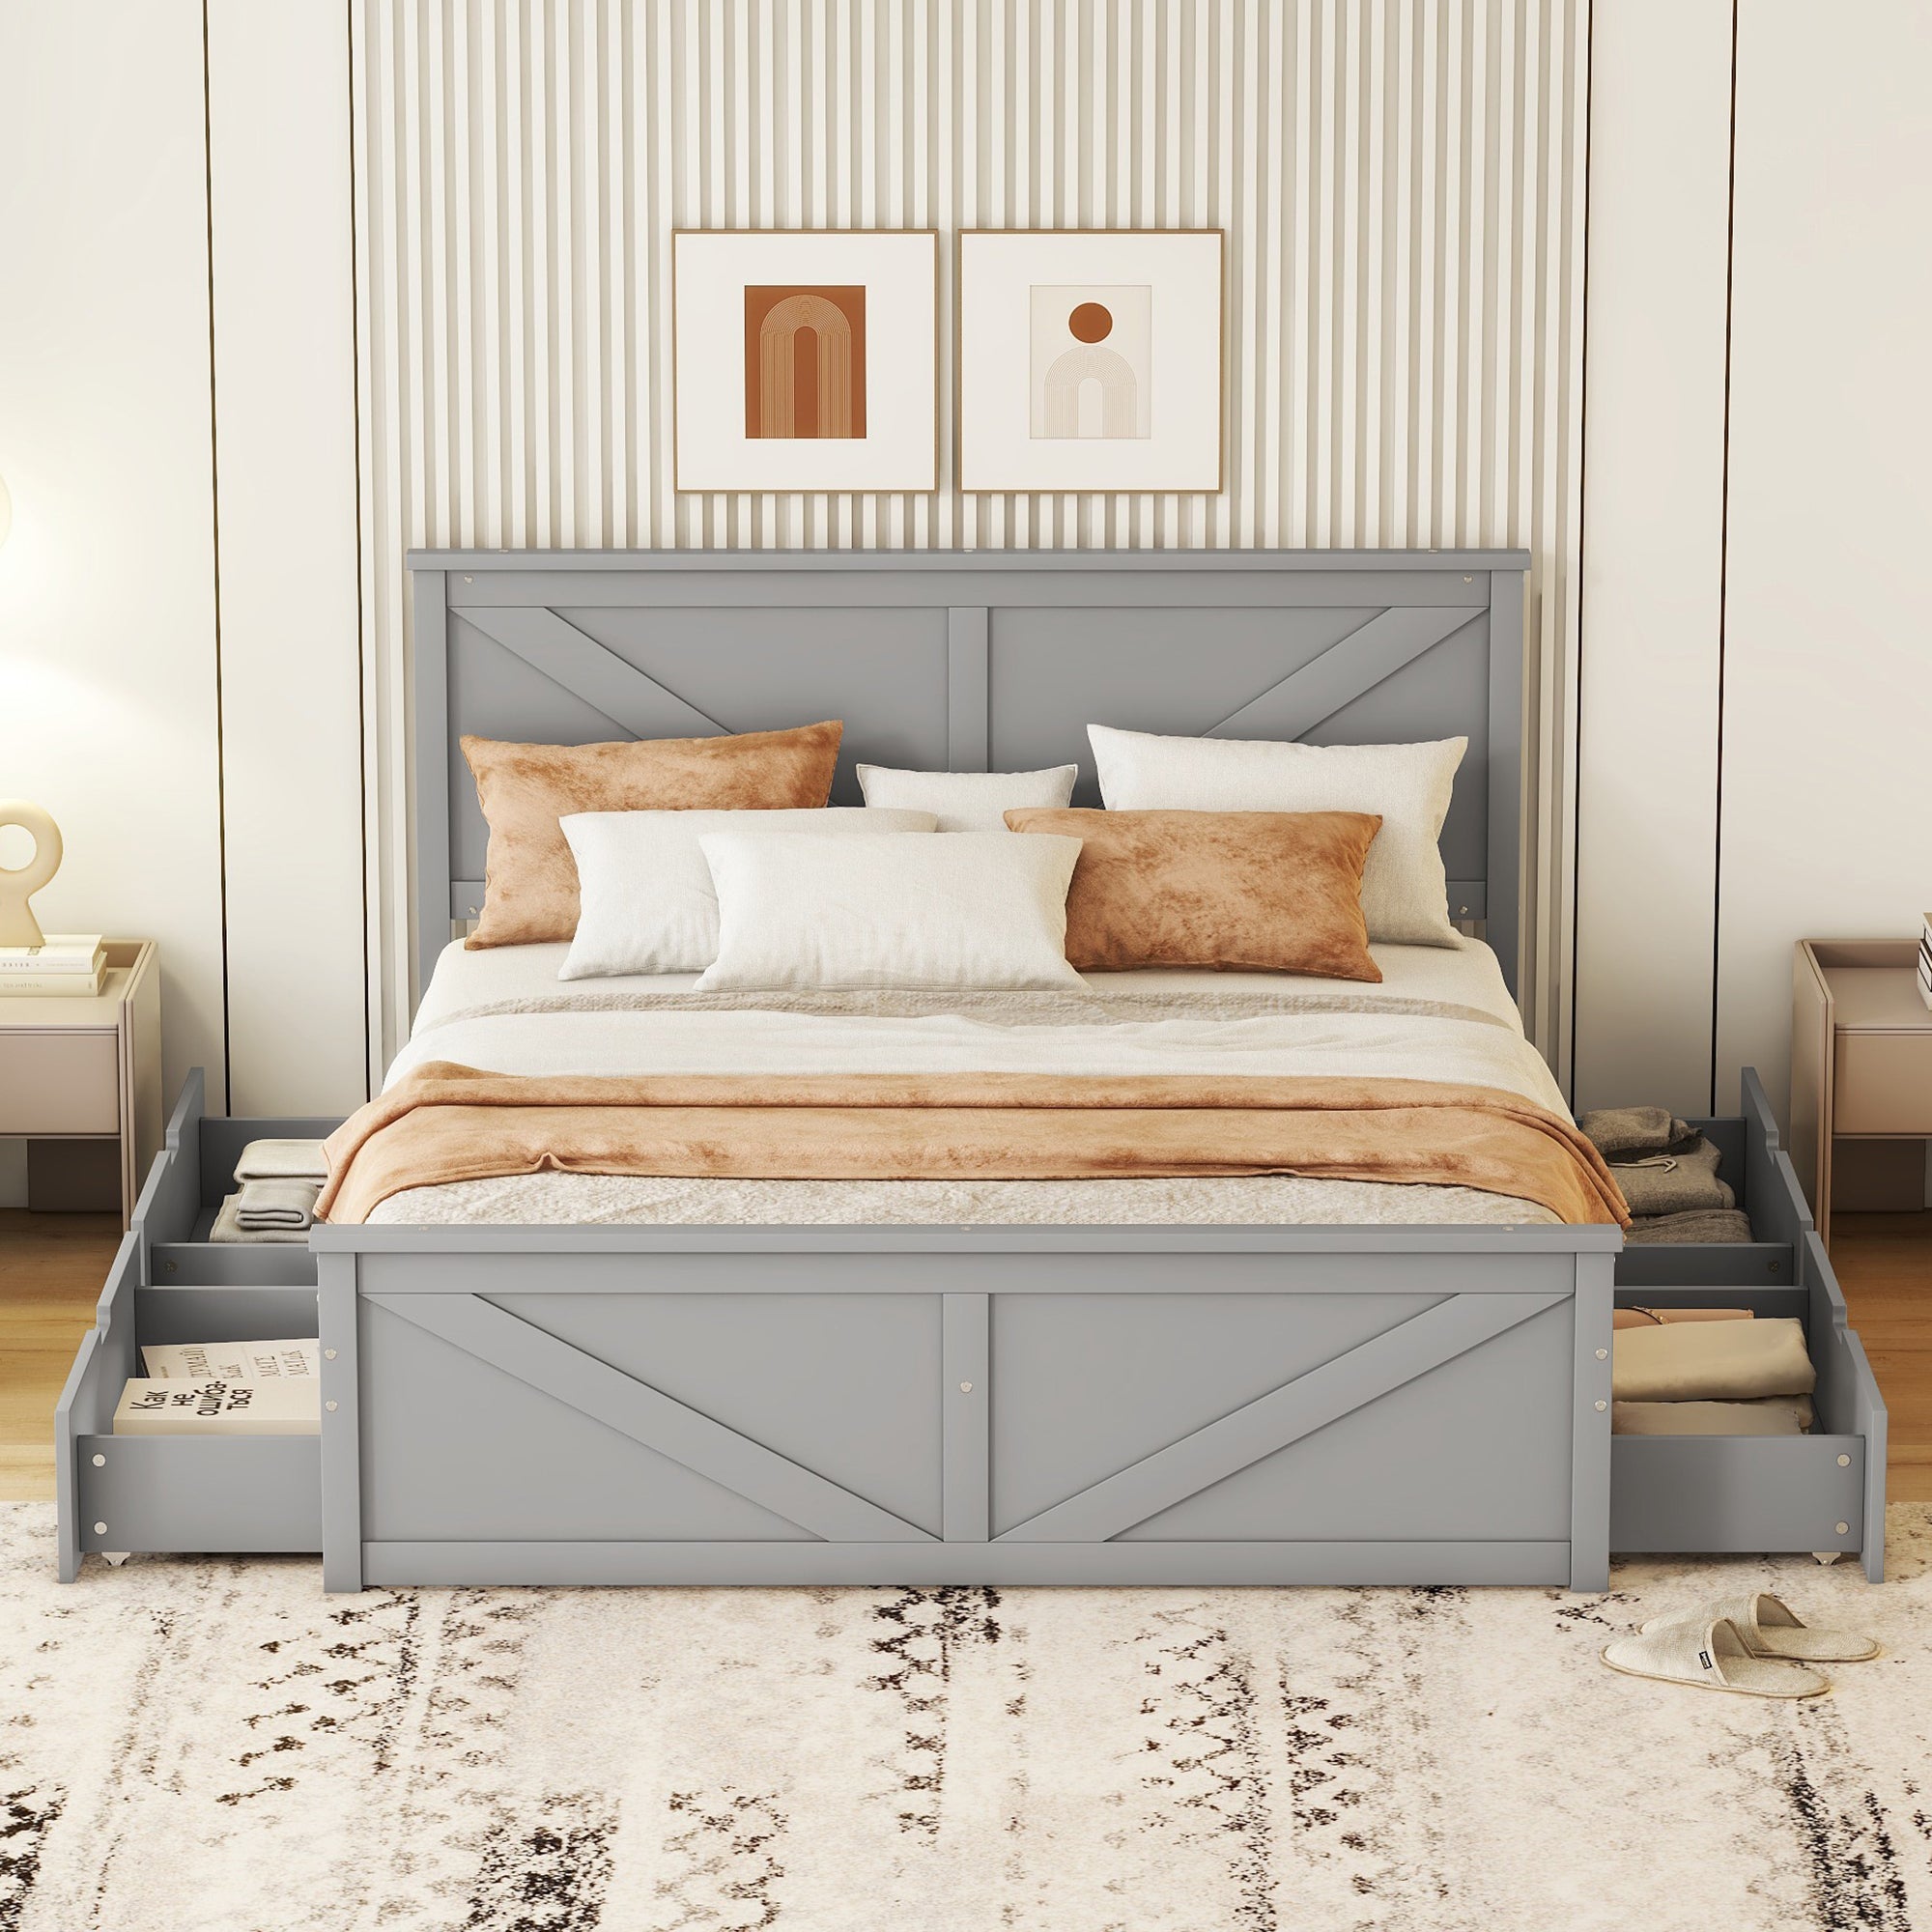 okwish 160x200 cm einfaches Plattformbett aus Holz, schlicht und stilvoll, mit vier Schubladen, grau